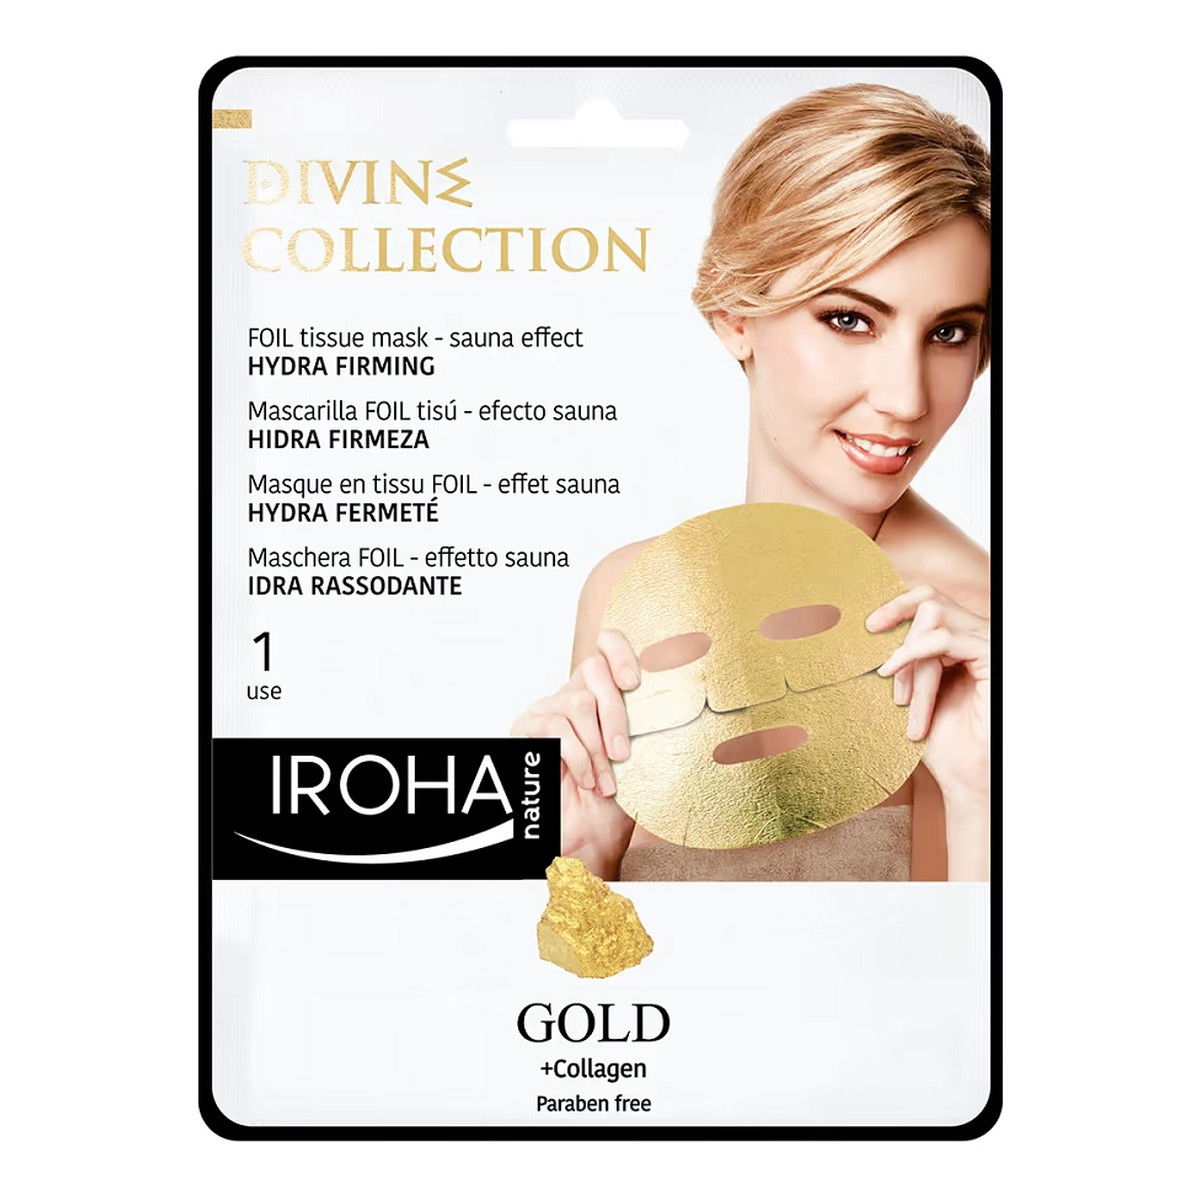 Iroha Nature Gold + collagen hydra firming face mask nawilżająco-ujędrniająca maska w płachcie ze złotem i kolagenem